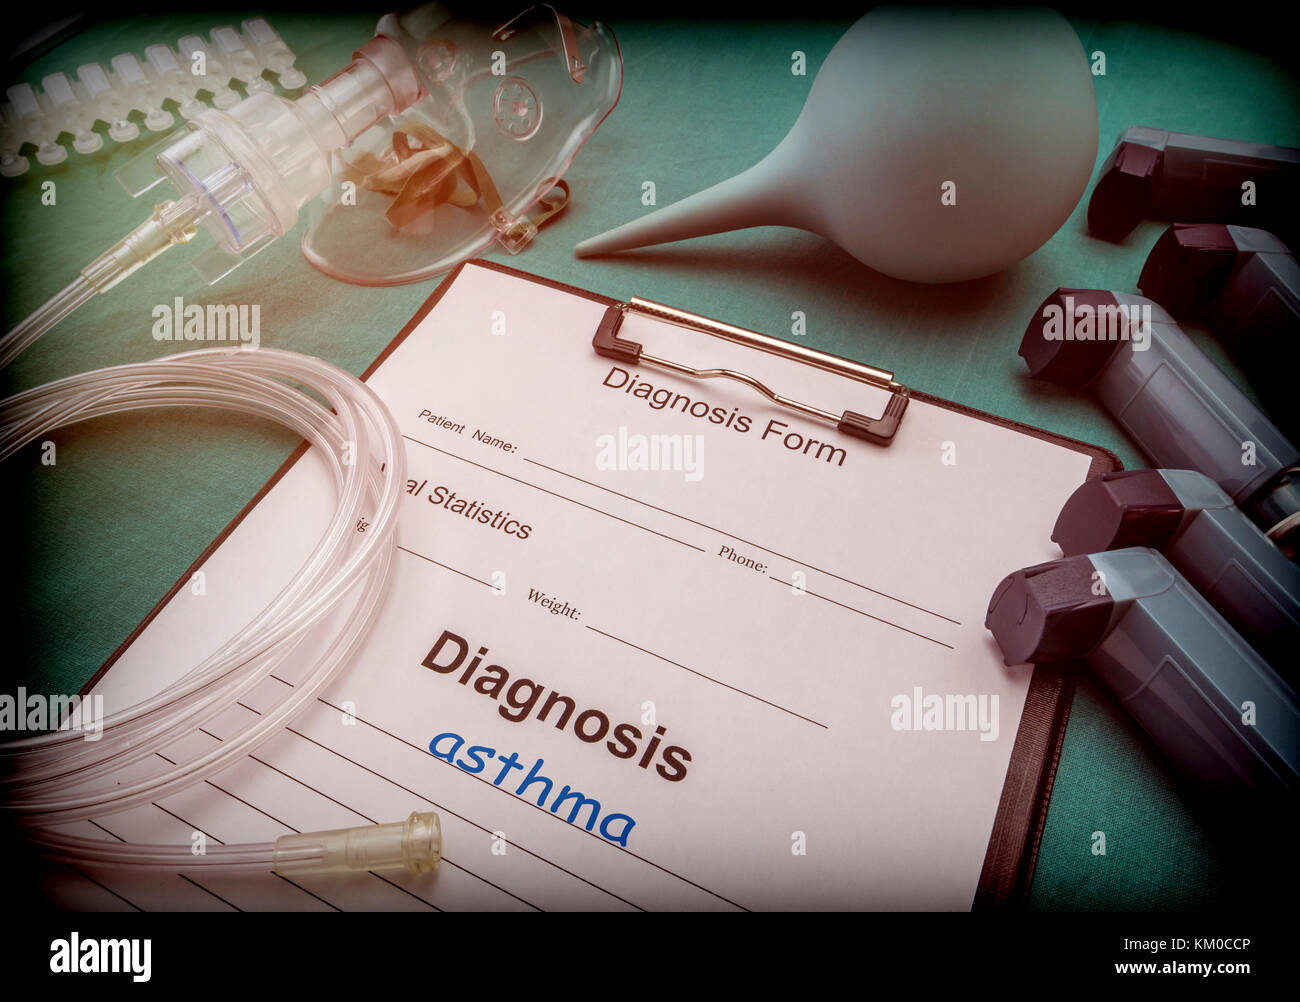 Modulo di diagnostica, asma, le maschere di ossigeno e inalatori in un ospedale, immagine concettuale Foto Stock